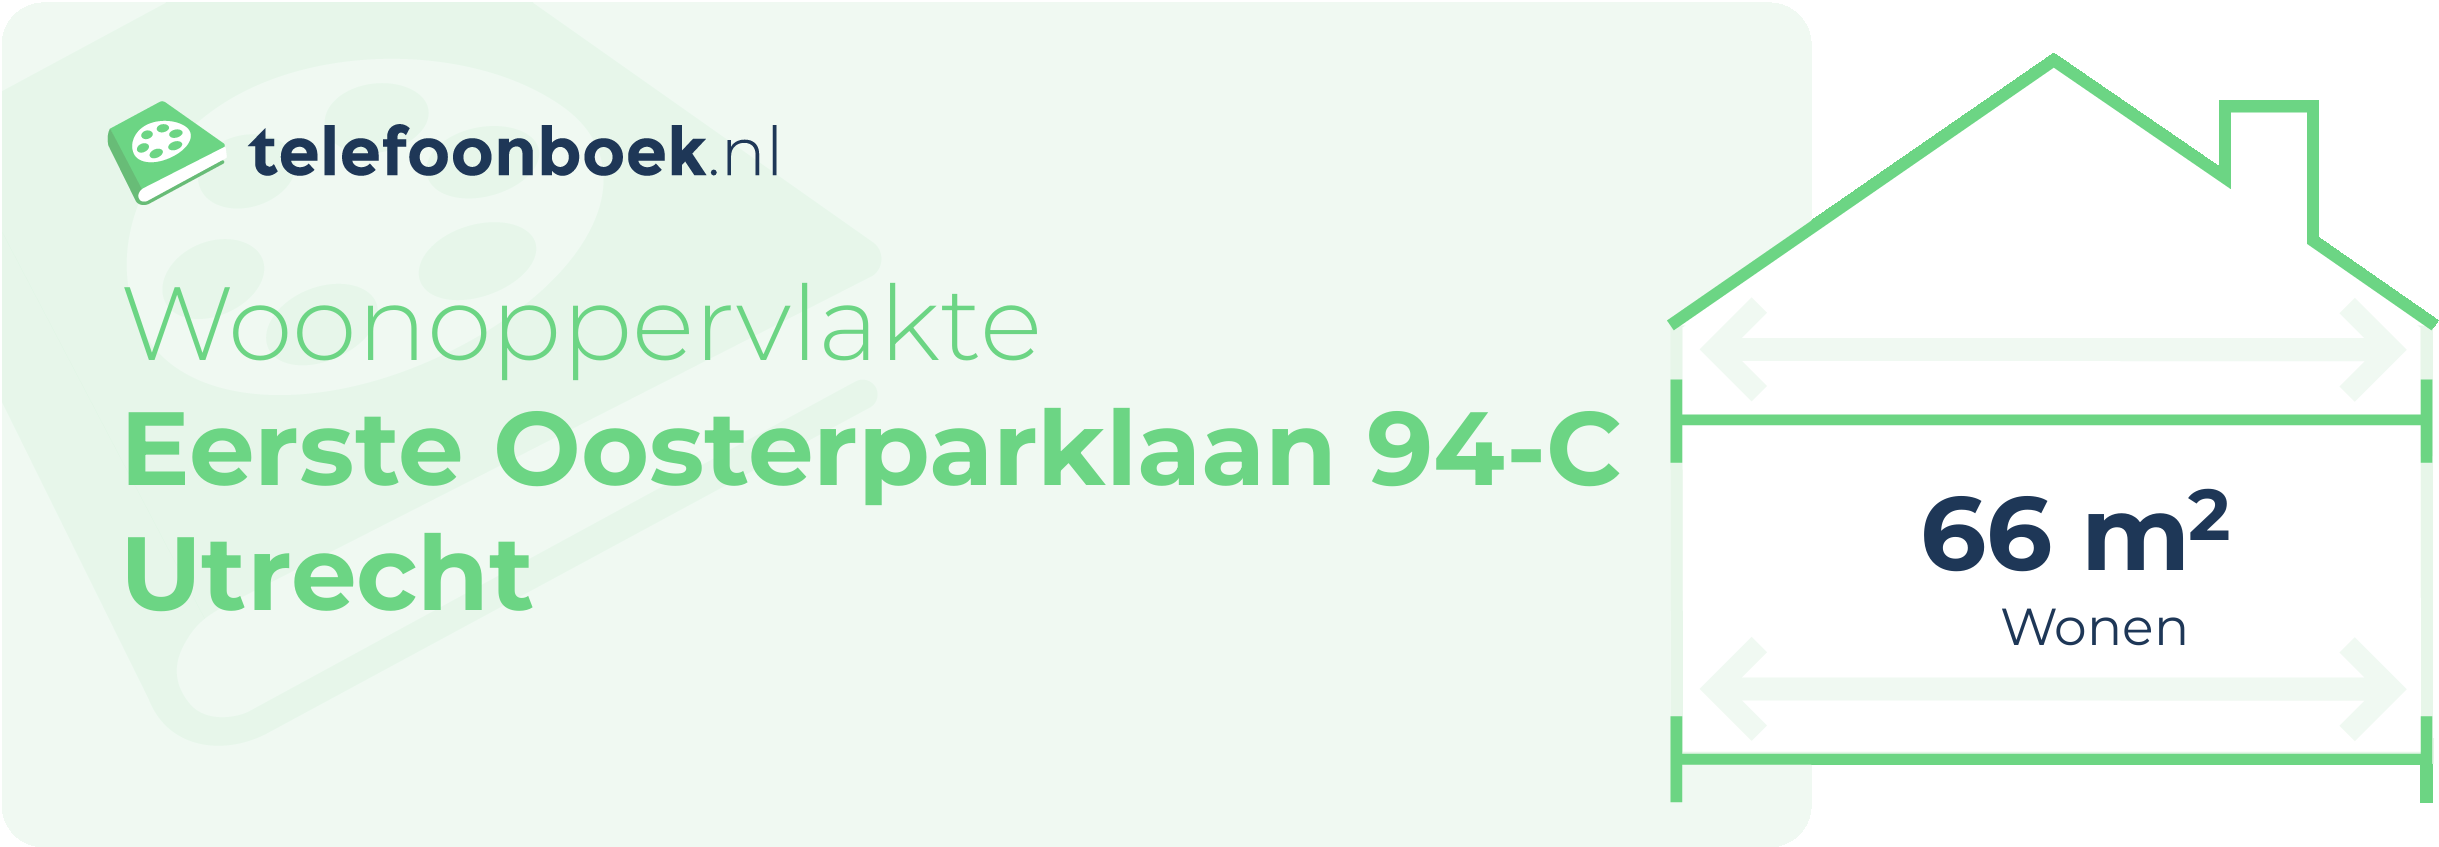 Woonoppervlakte Eerste Oosterparklaan 94-C Utrecht